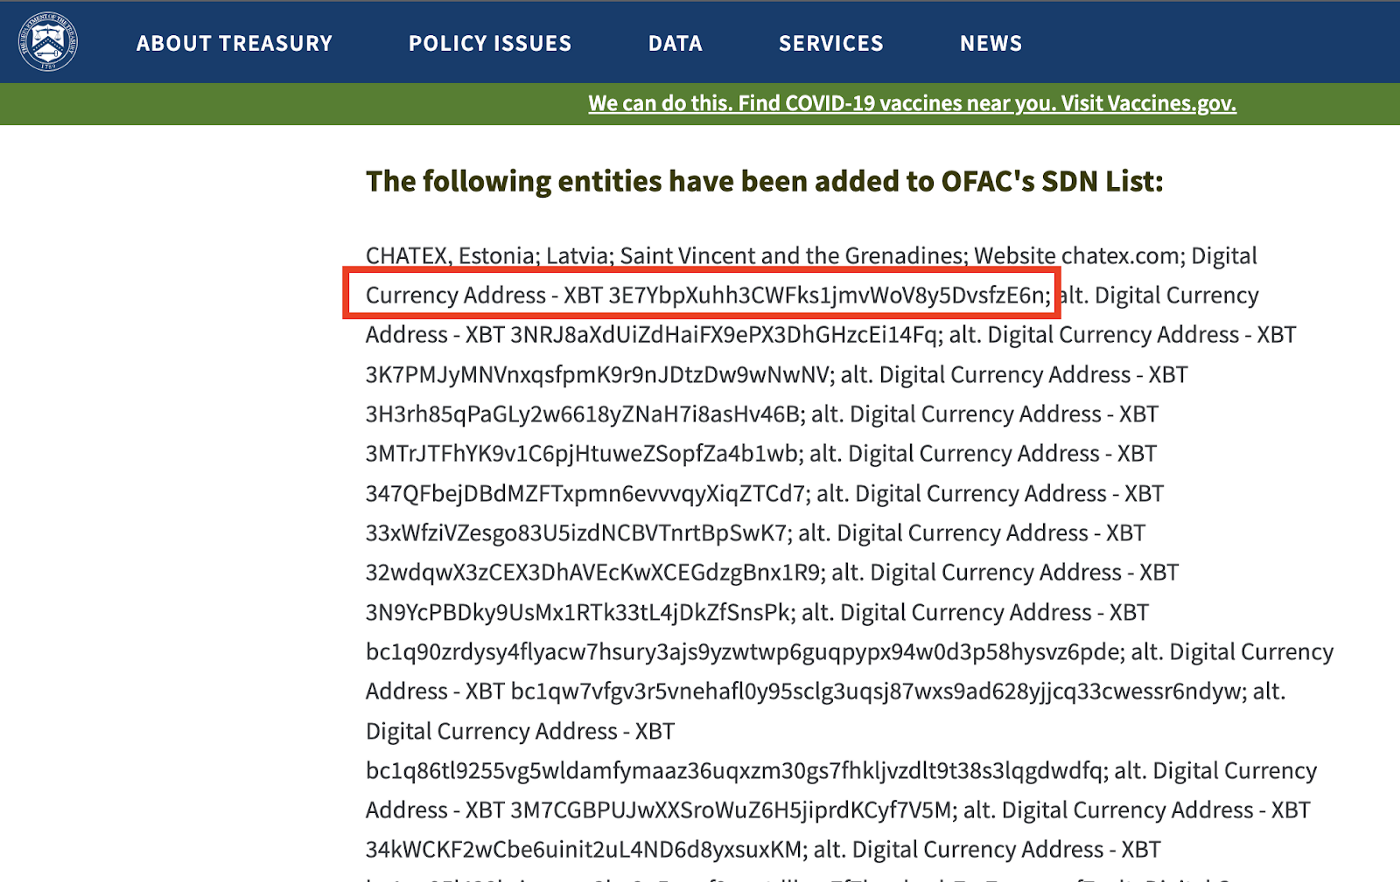 OFAC SDN List